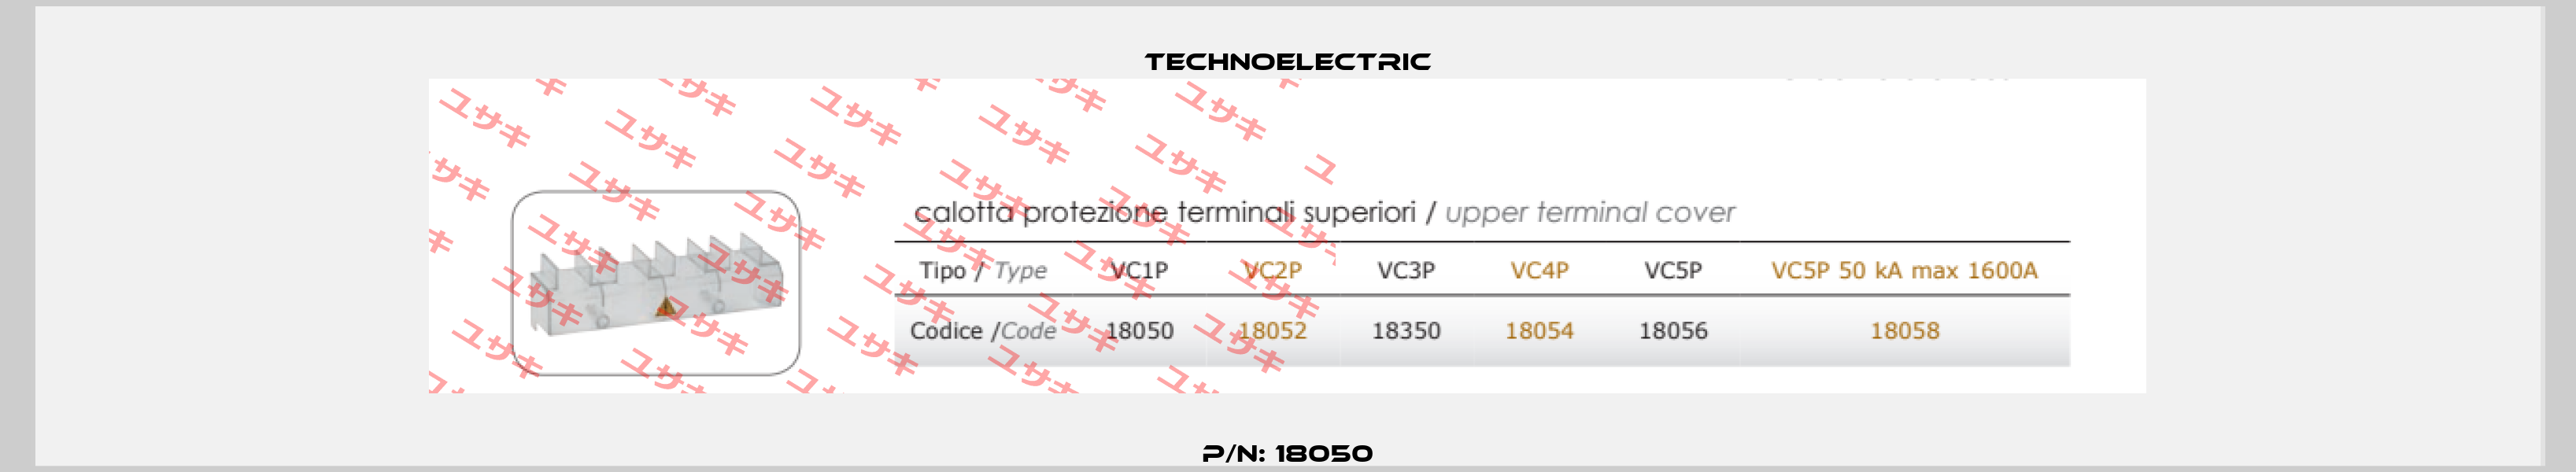 P/N: 18050 Technoelectric